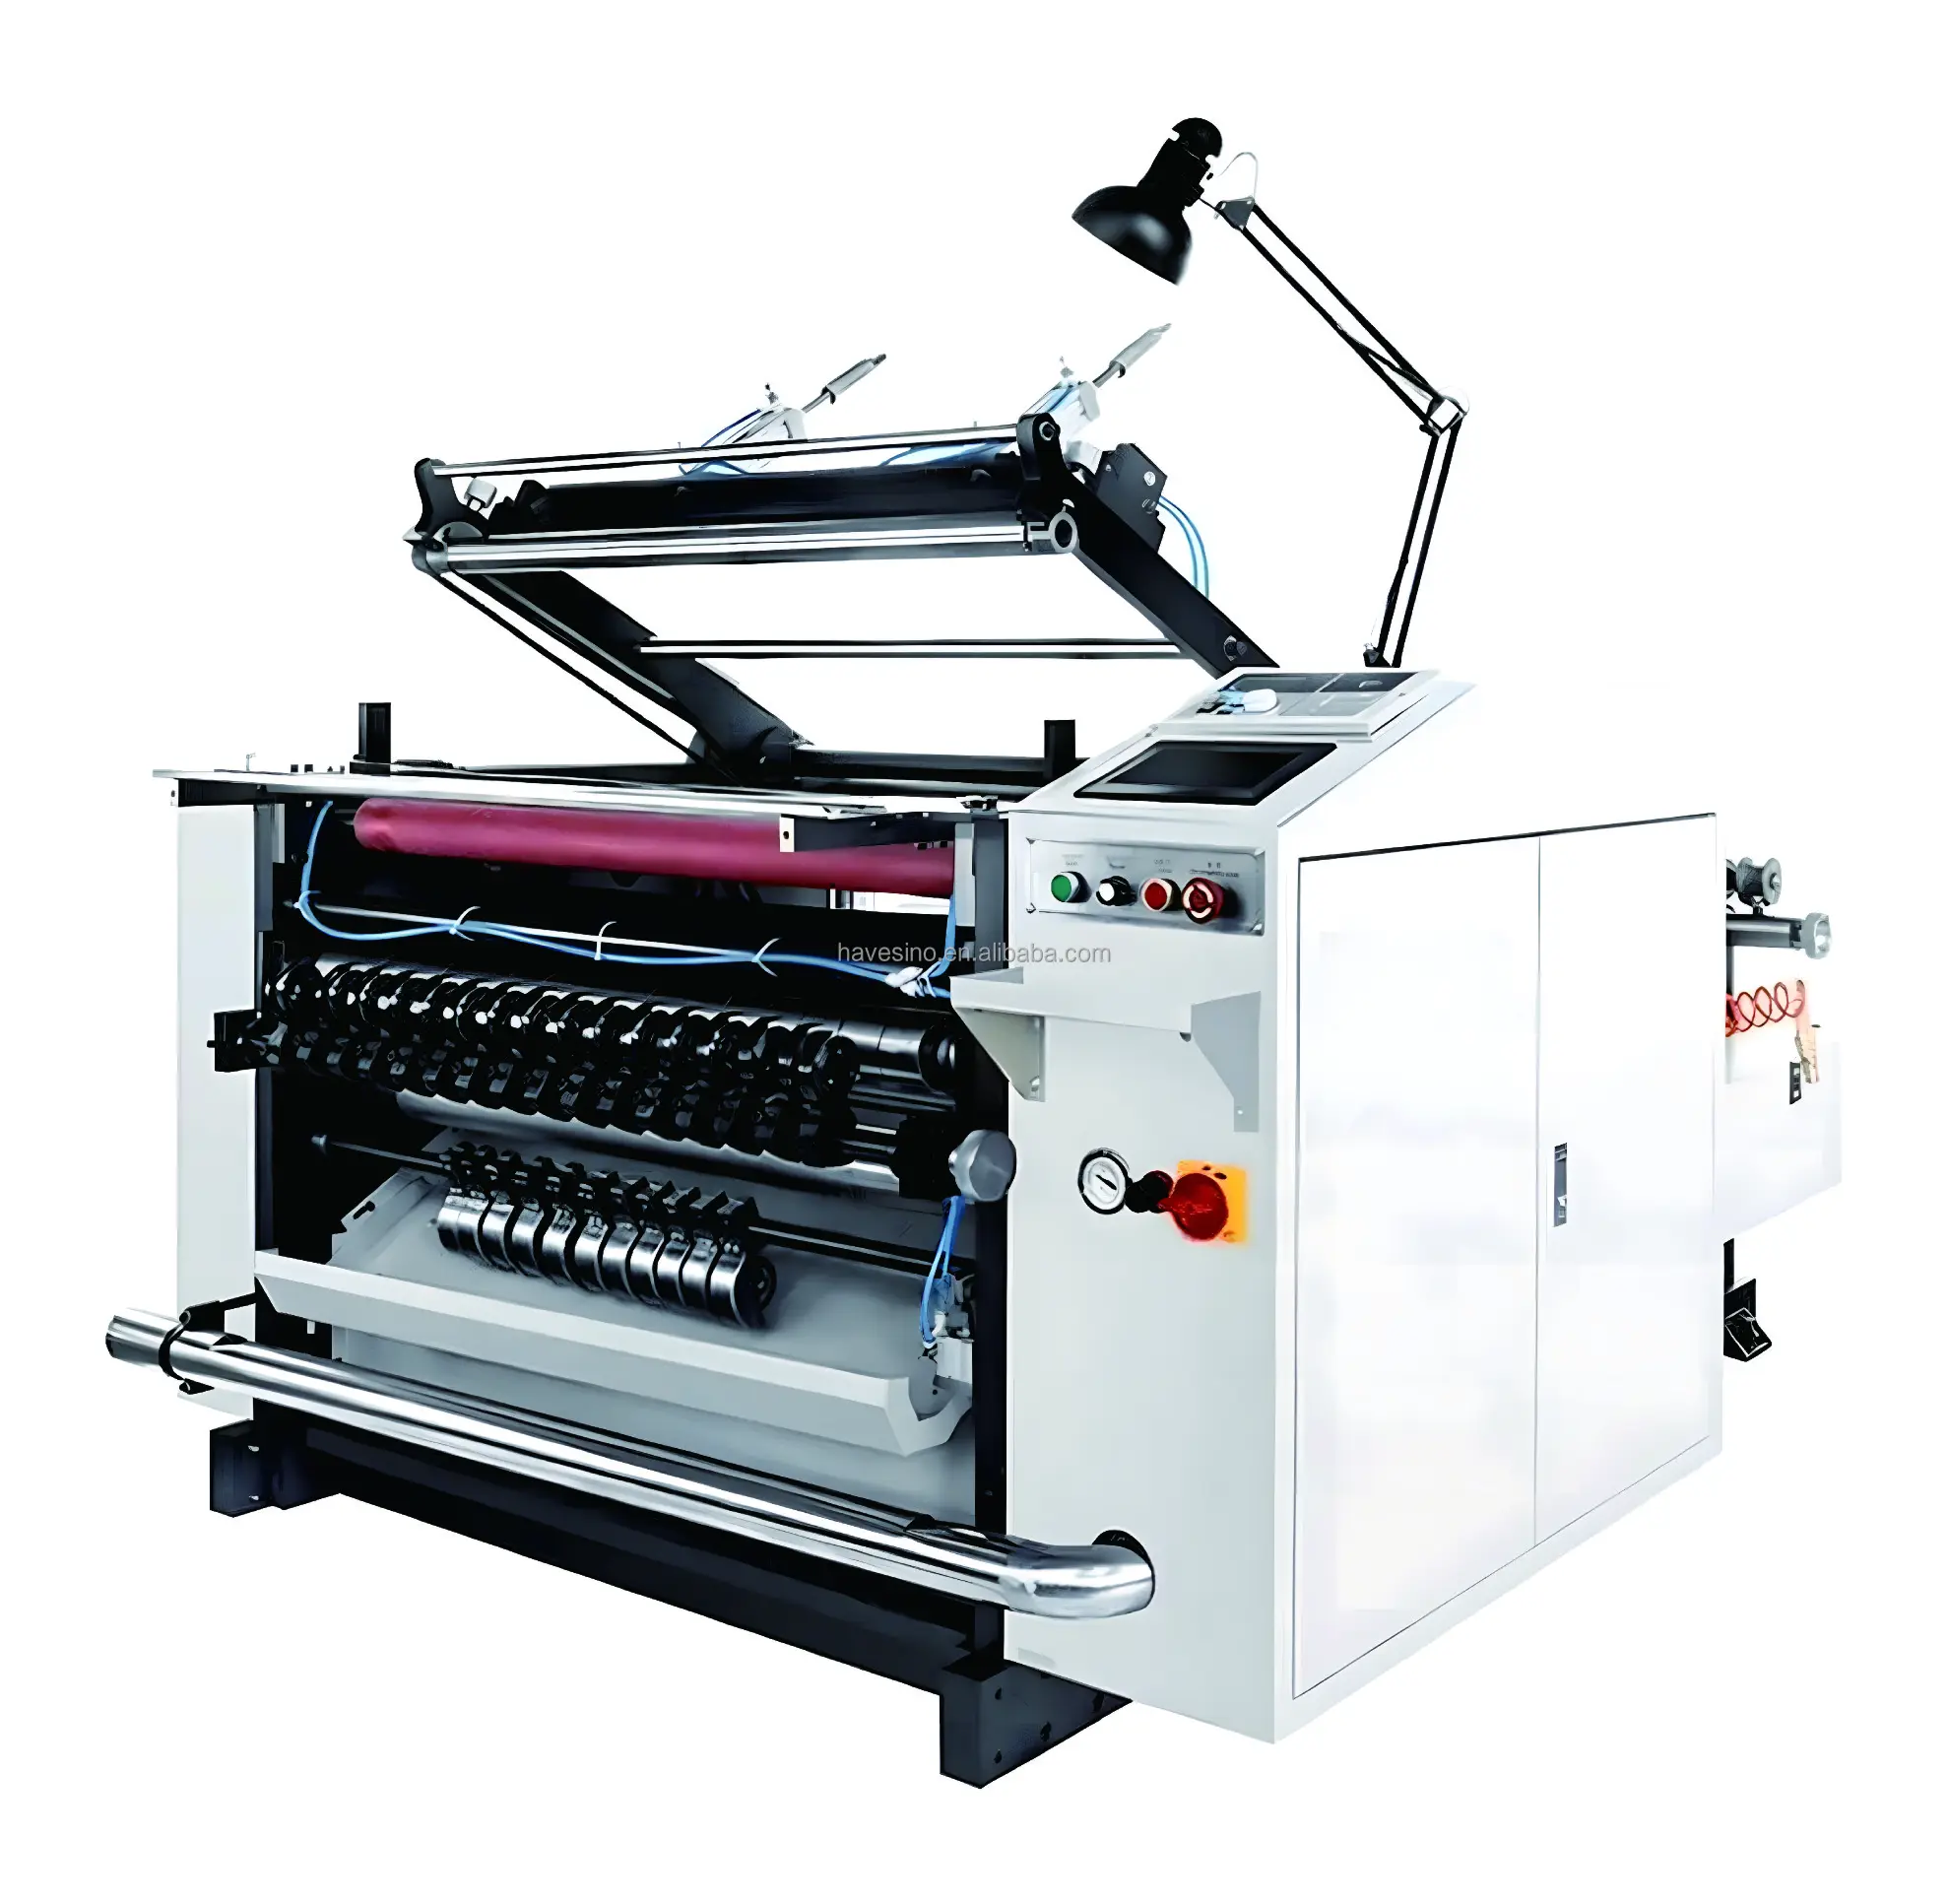 أحدث تصميم لإنفاذ القانون ماكينة قطع ورق حراري آلة قطع ورق طباعة متنقلة آلة لف الورق